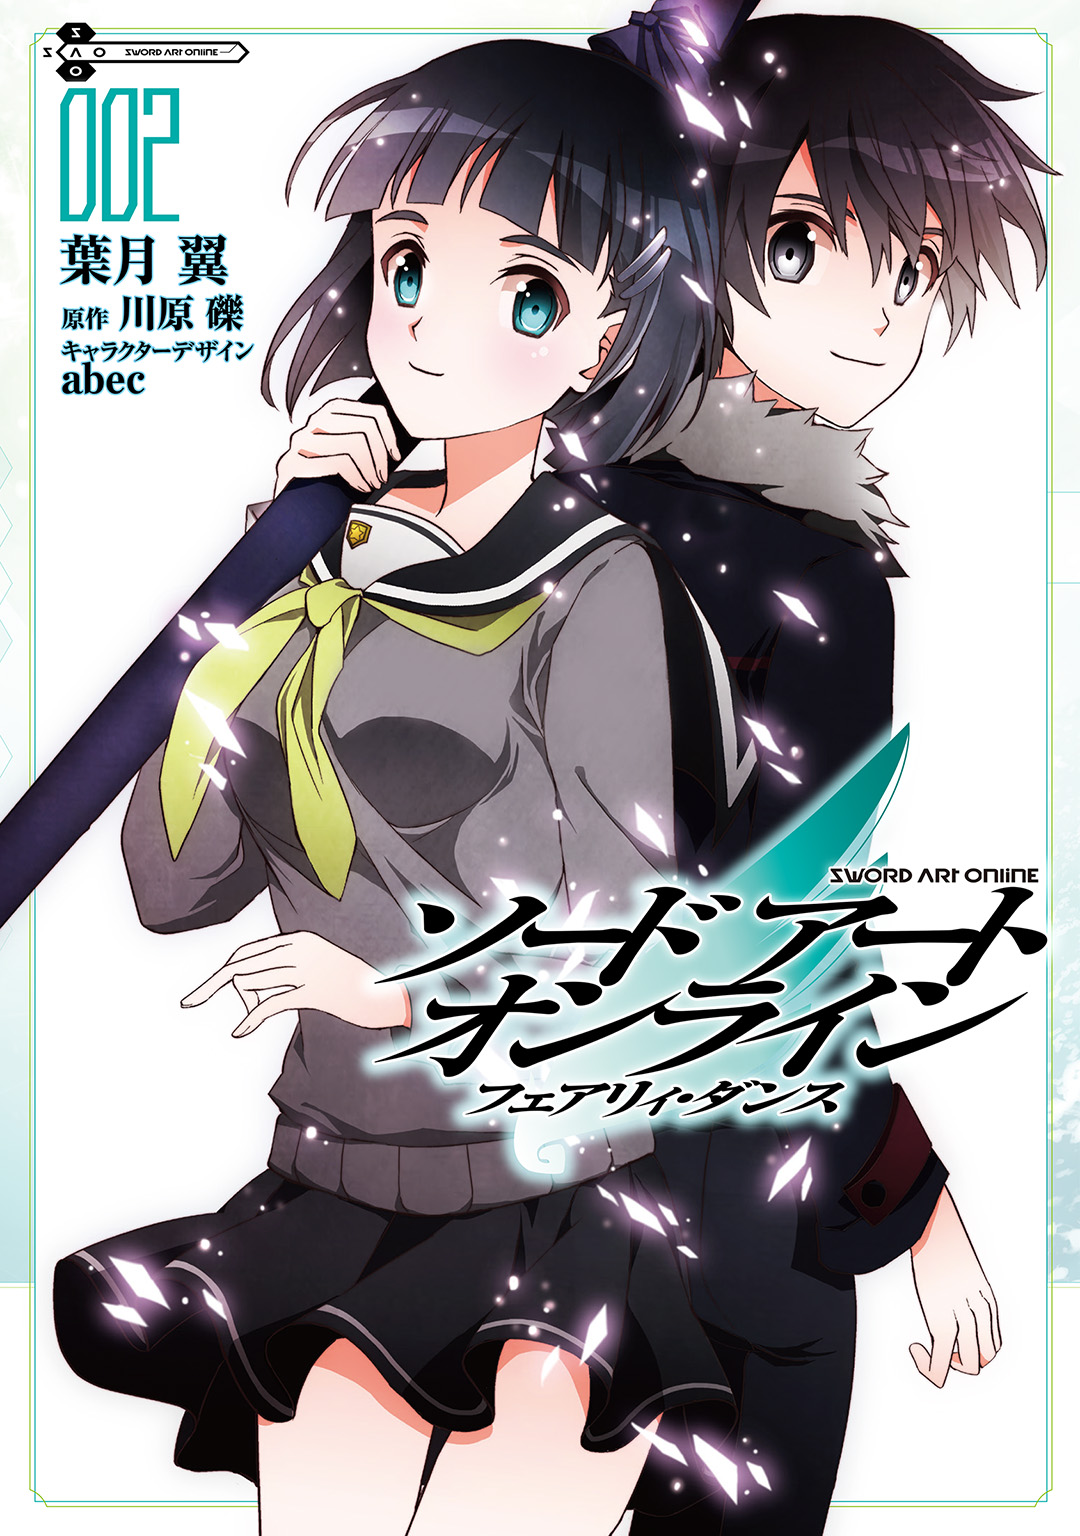 Sword Art Online Light Novel Volume 02, Sword Art Online Wiki